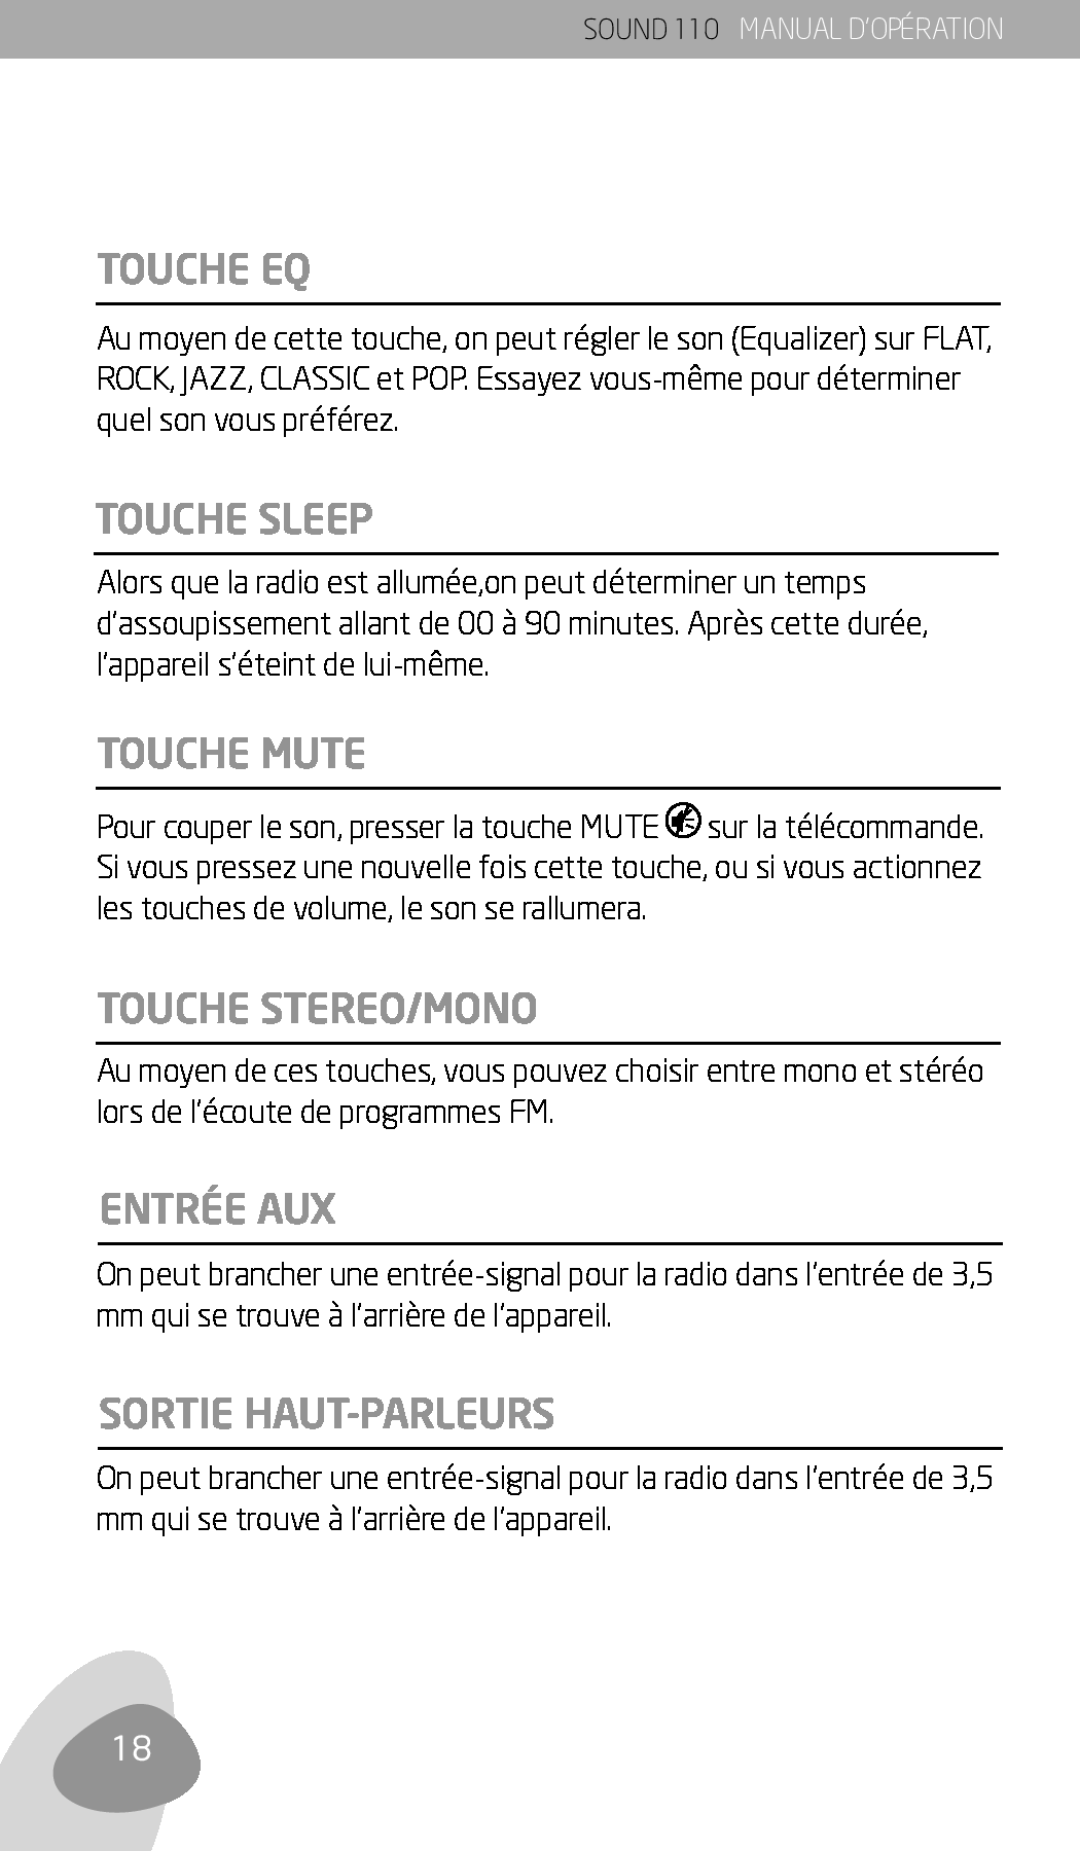 Eton 110 owner manual Touche Eq, Touche Sleep, Touche Mute, Touche Stereo/Mono, Entrée Aux, Sortie Haut-Parleurs 